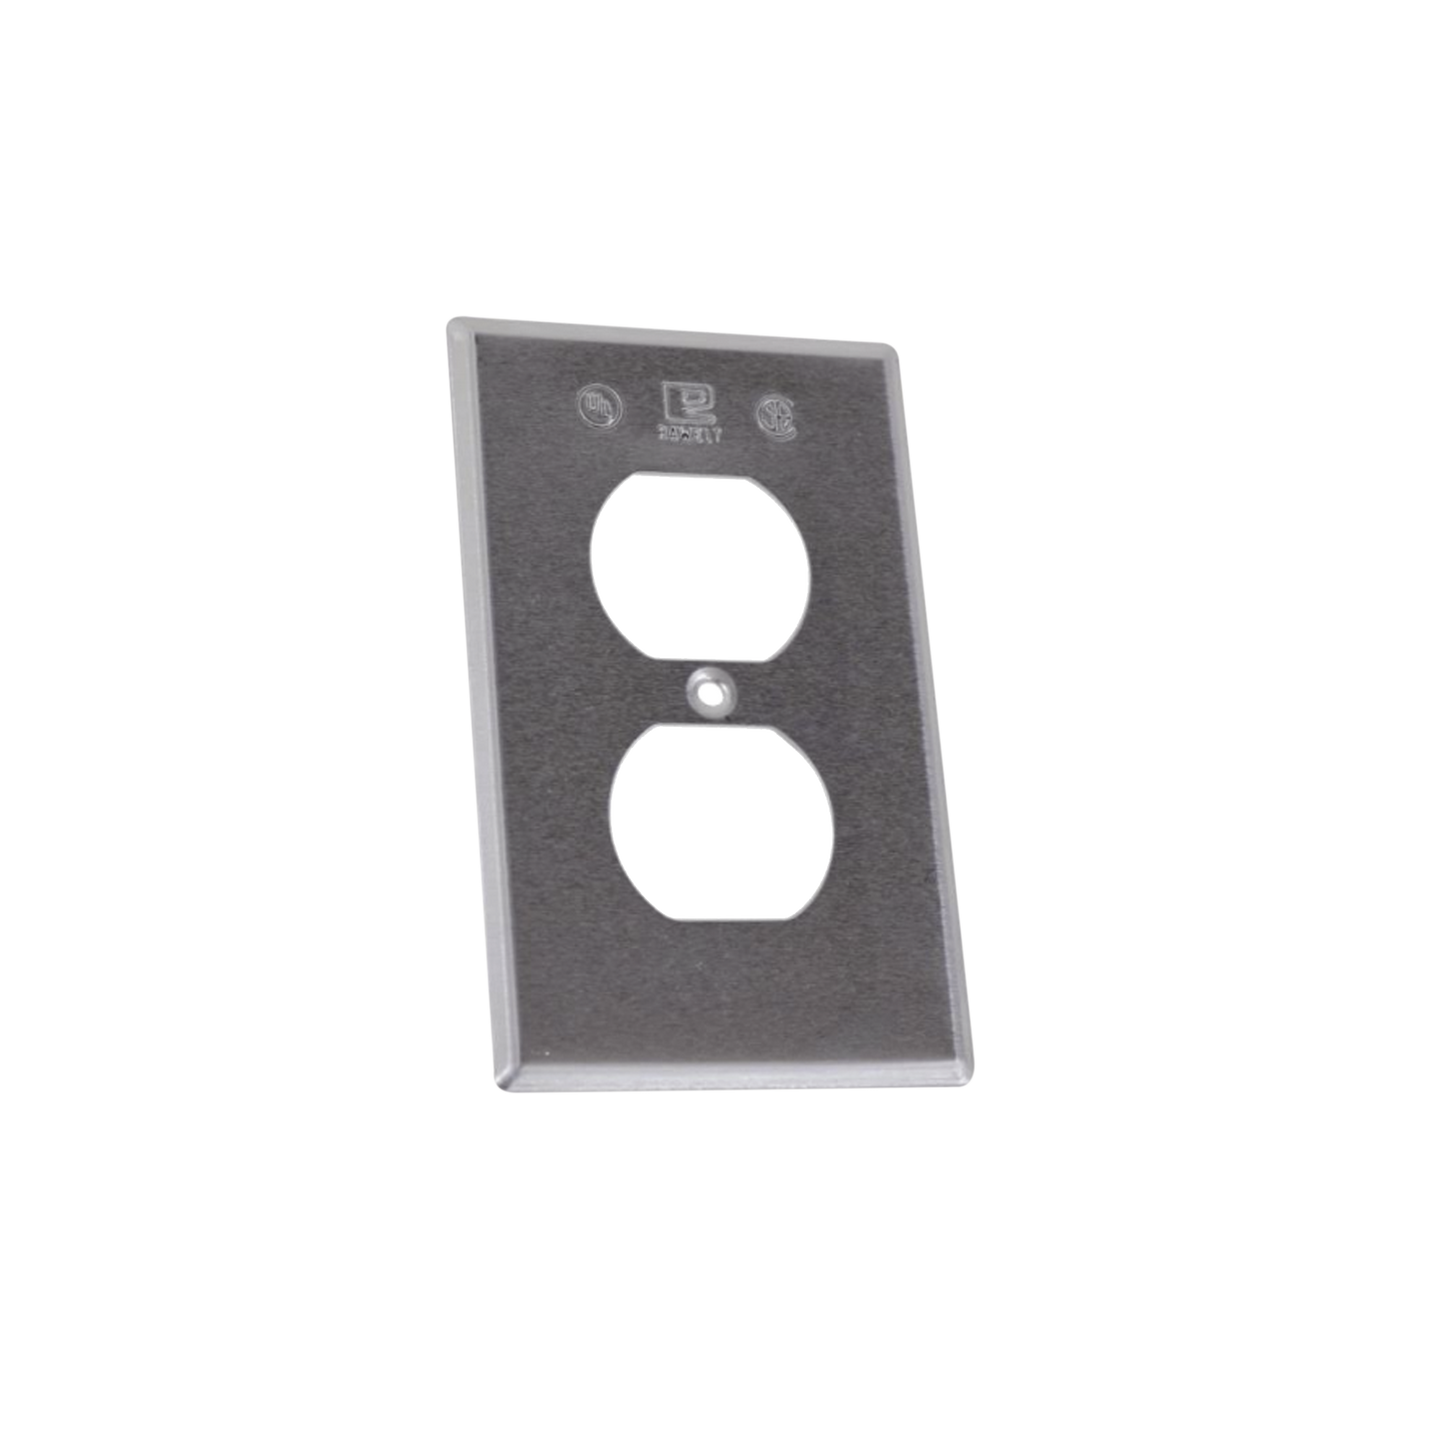 Tapa rectangular para contacto dúplex de aluminio tipo RR a prueba de intemperie.